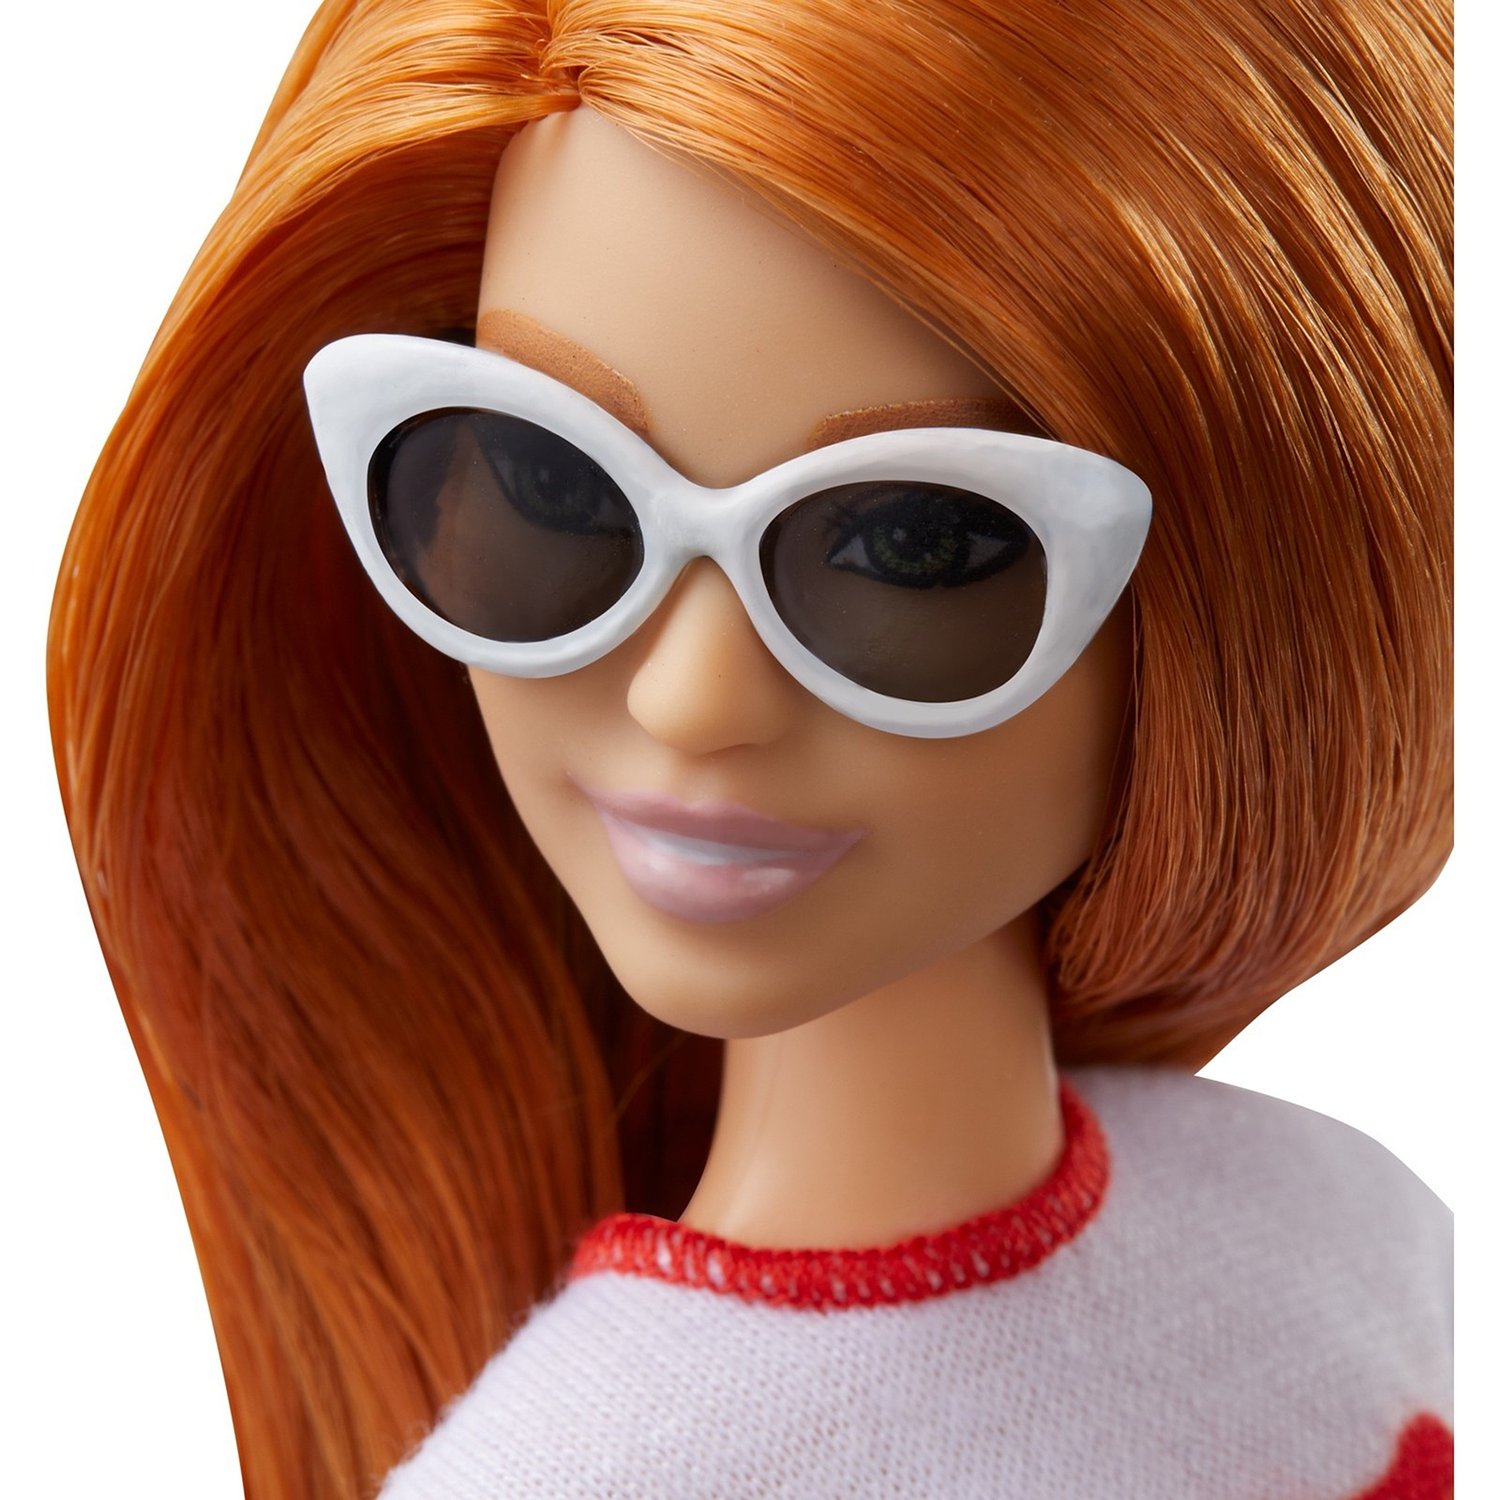 Кукла Barbie Игра с модой Радужный восторг, FXL55